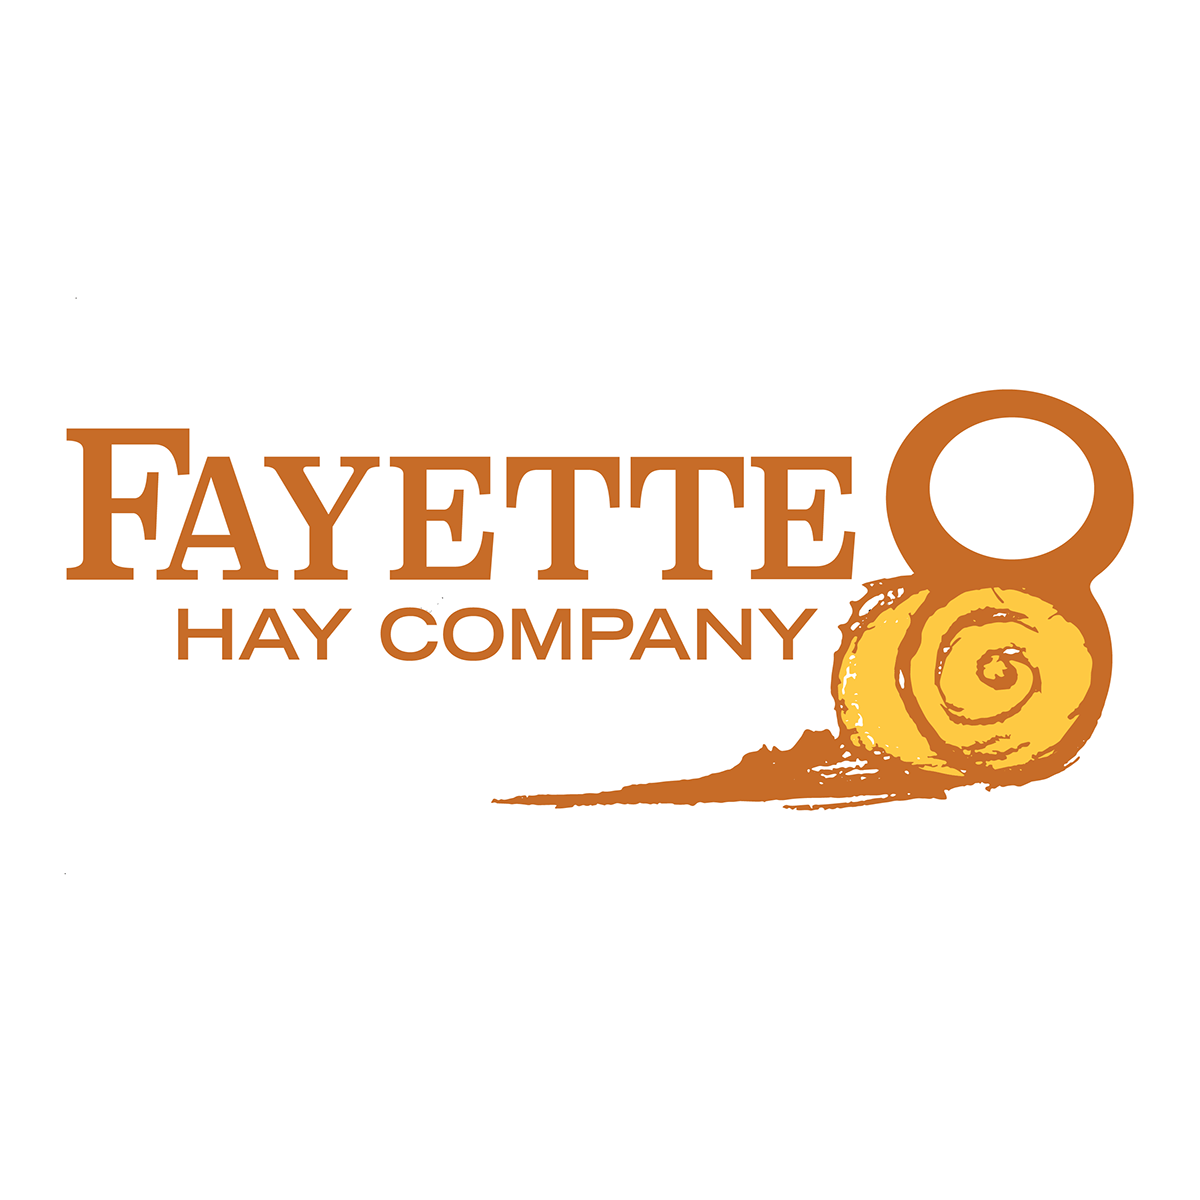 Hay Company Logo - Fayette 8 Hay Company Logo